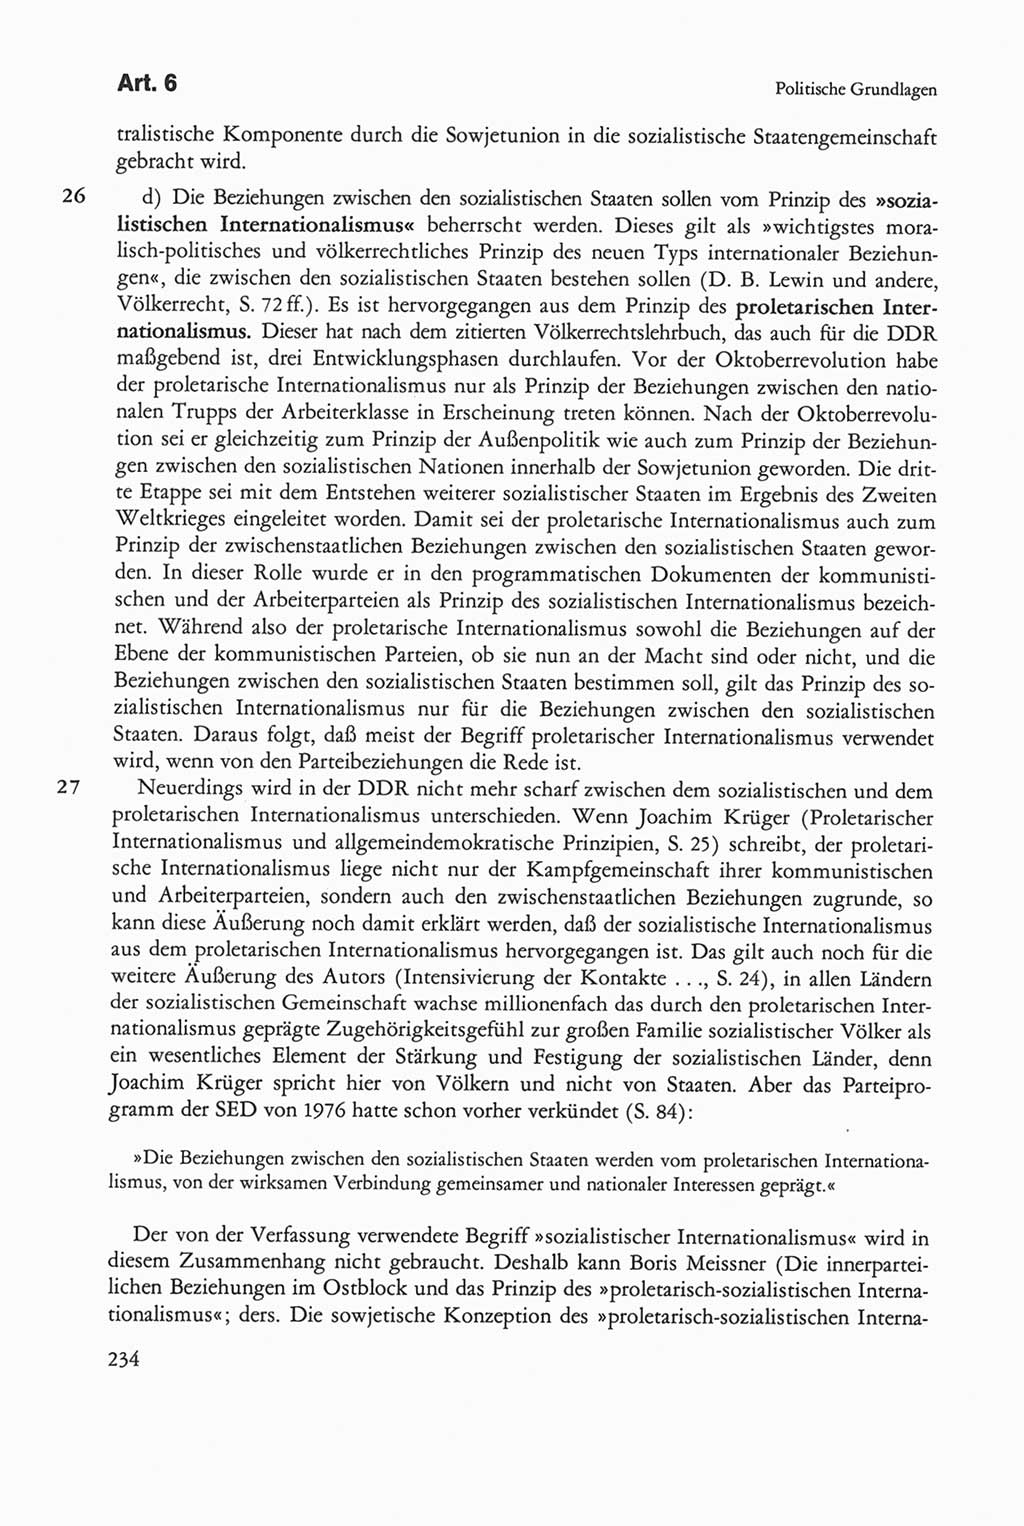 Die sozialistische Verfassung der Deutschen Demokratischen Republik (DDR), Kommentar 1982, Seite 234 (Soz. Verf. DDR Komm. 1982, S. 234)